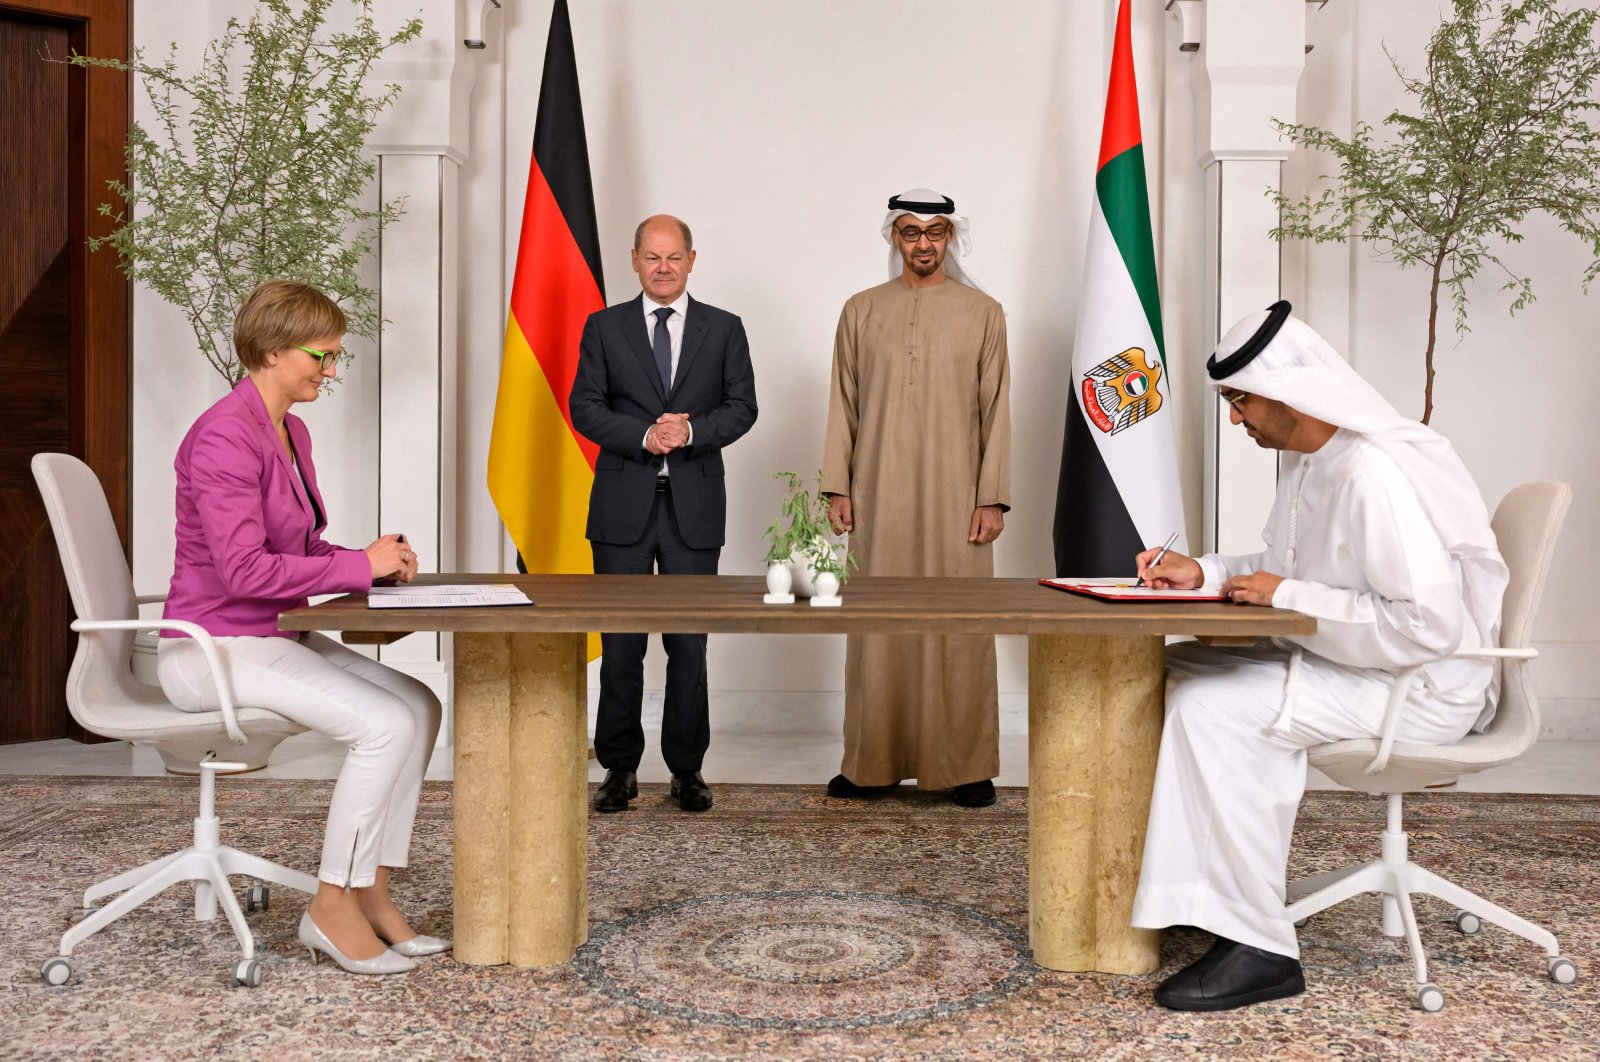 Jerman mengamankan kesepakatan LNG dari UEA saat Scholz mengunjungi Teluk untuk energi